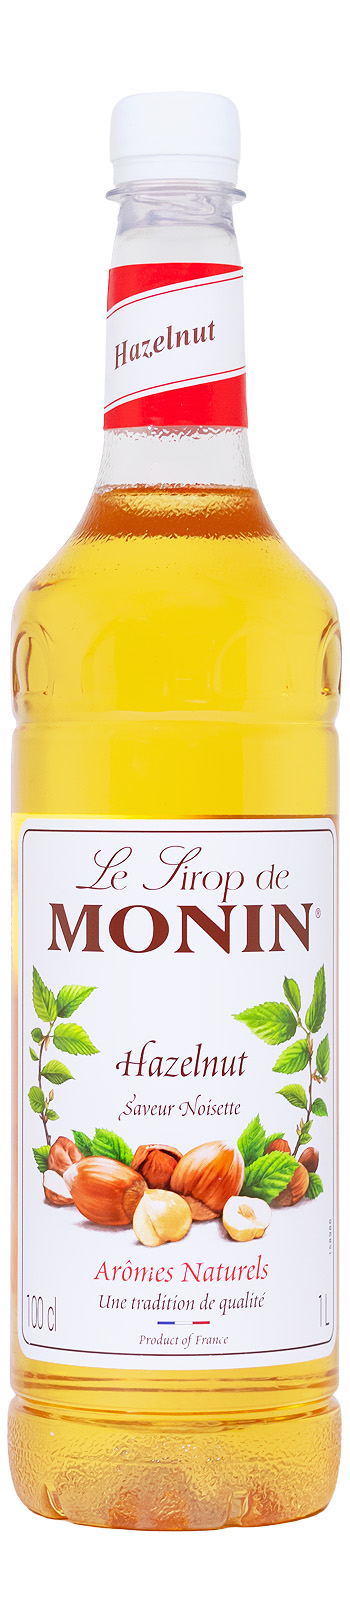 Monin Haselnuss Noisette Sirup PET-Flasche - 1 Liter